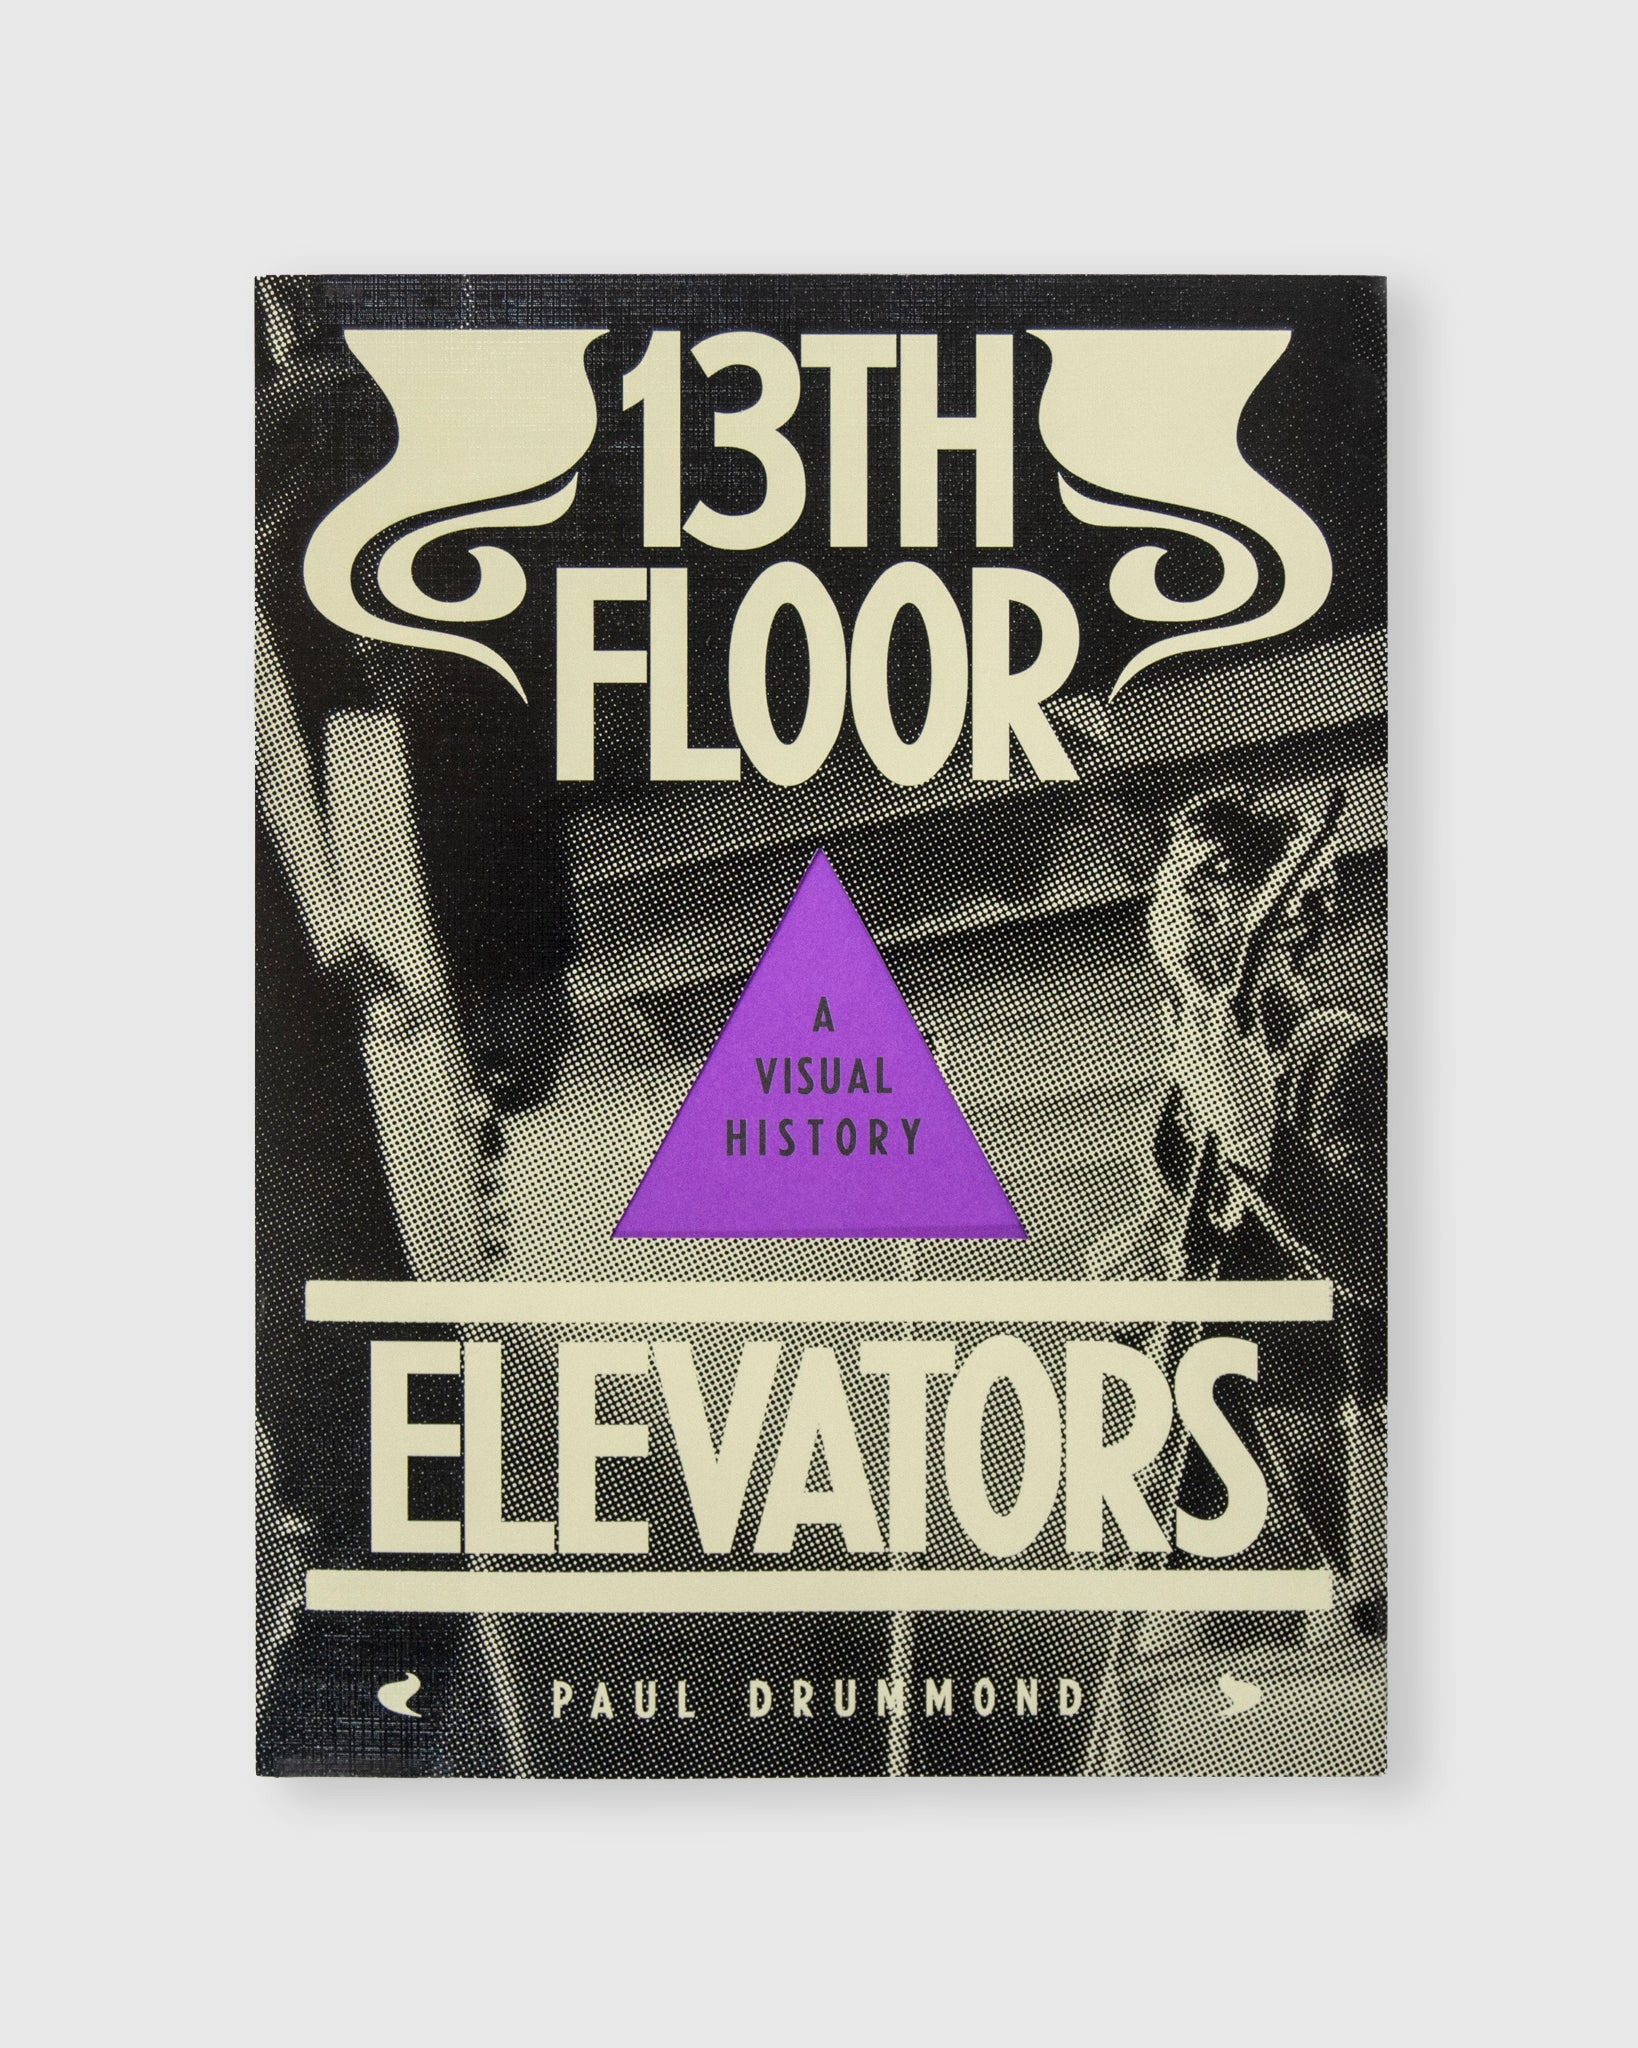 13th floor. Томми Холл 13th Floor Elevators. Группа 13th Floor Elevators. 13th Floor Elevators albums. Антология пола.